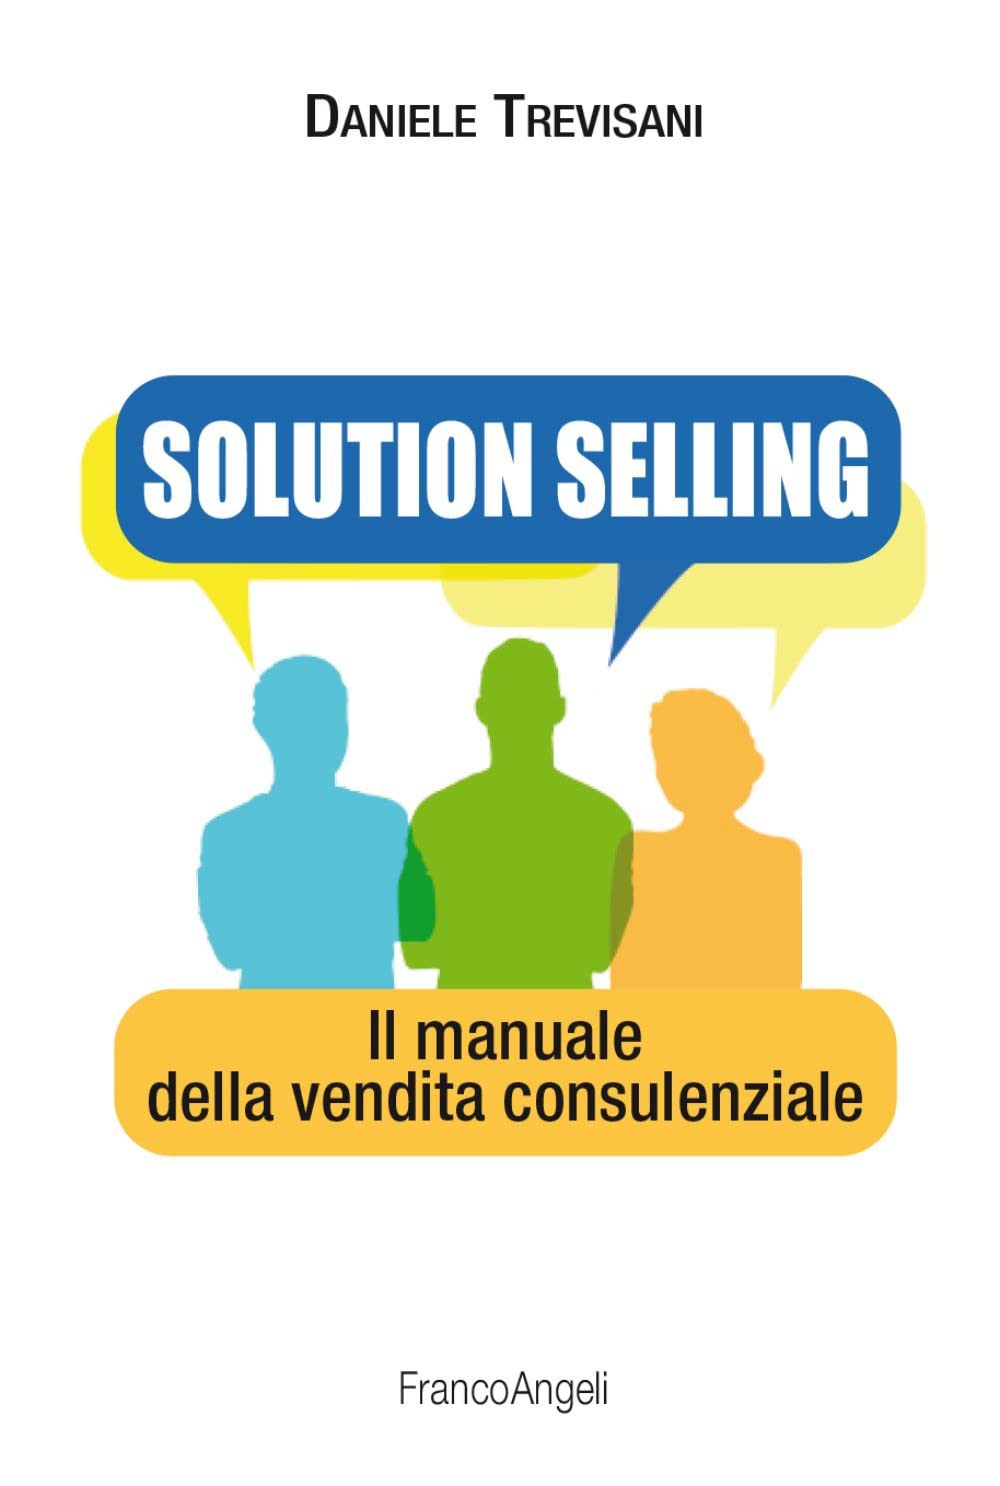 libro per corsi di vendita solution selling